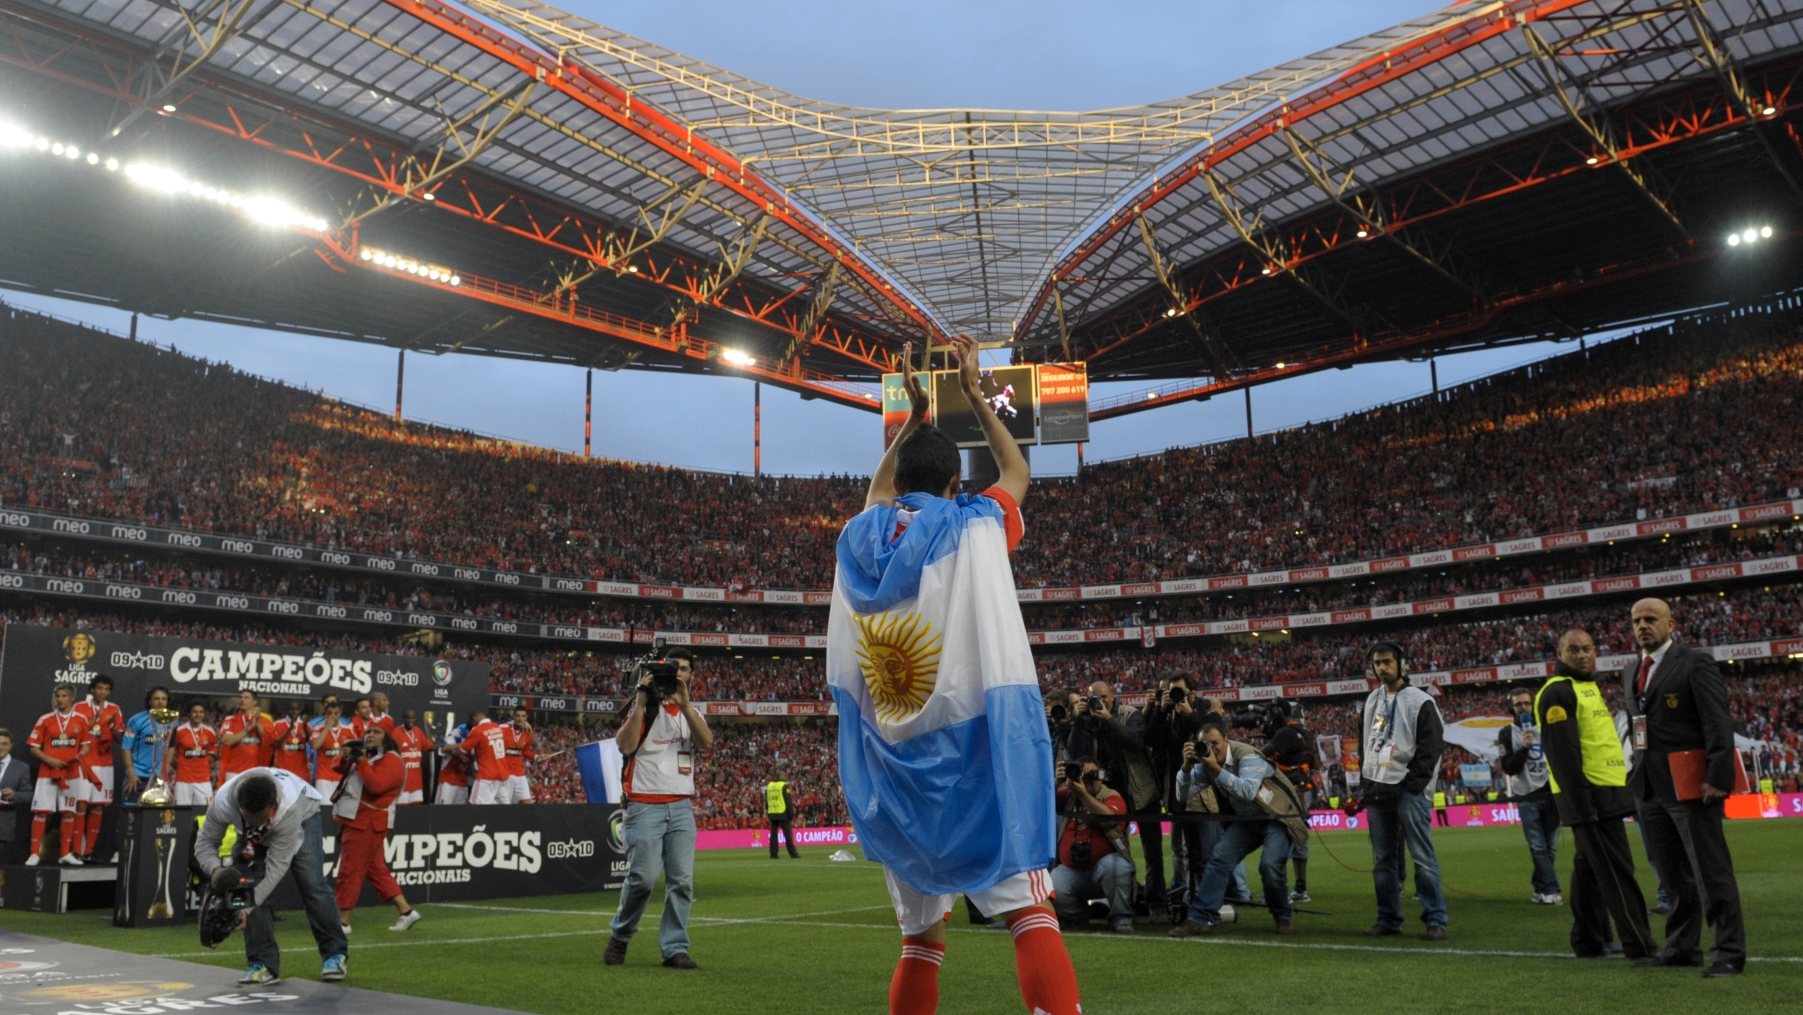 Ángel Di María saiu do Benfica após três temporadas no clube em 2010, quando foi campeão ao lado de Aimar, Saviola, Cardozo, Ramires, Luisão, David Luiz, Coentrão ou Javi García, entre outros